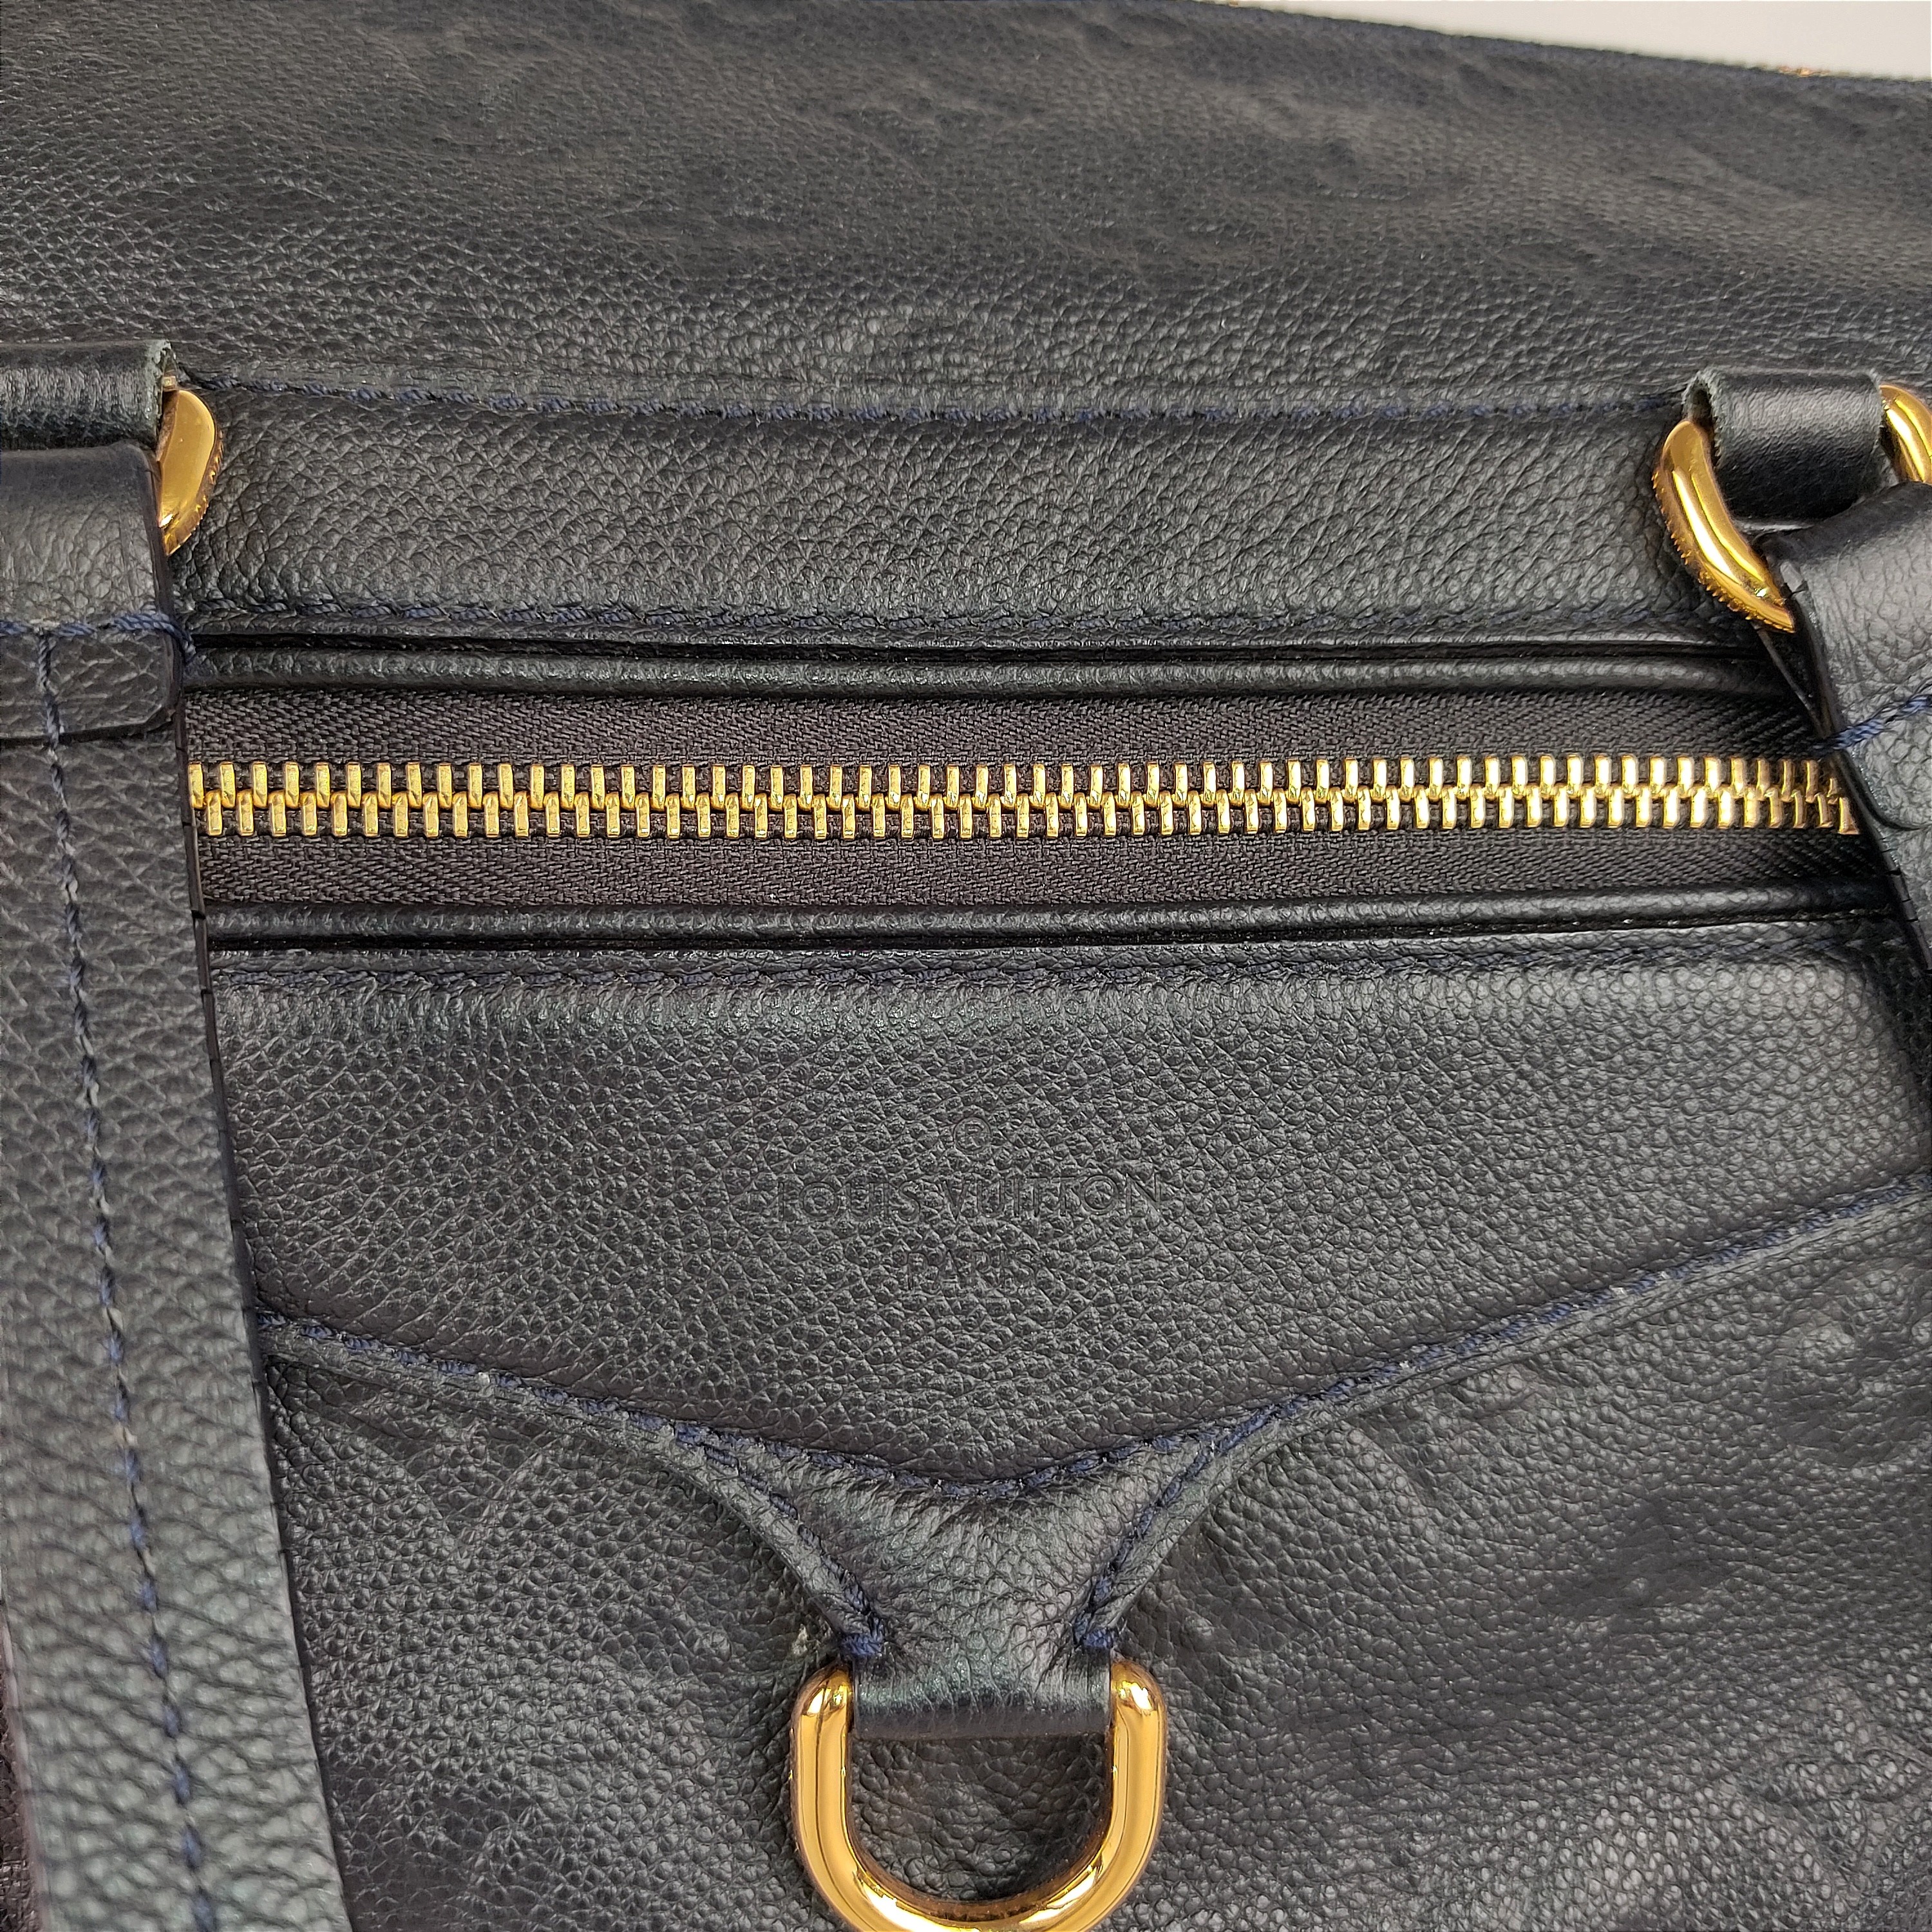 Louis Vuitton Lumineuse Blue Leather Handbag - CharityStars